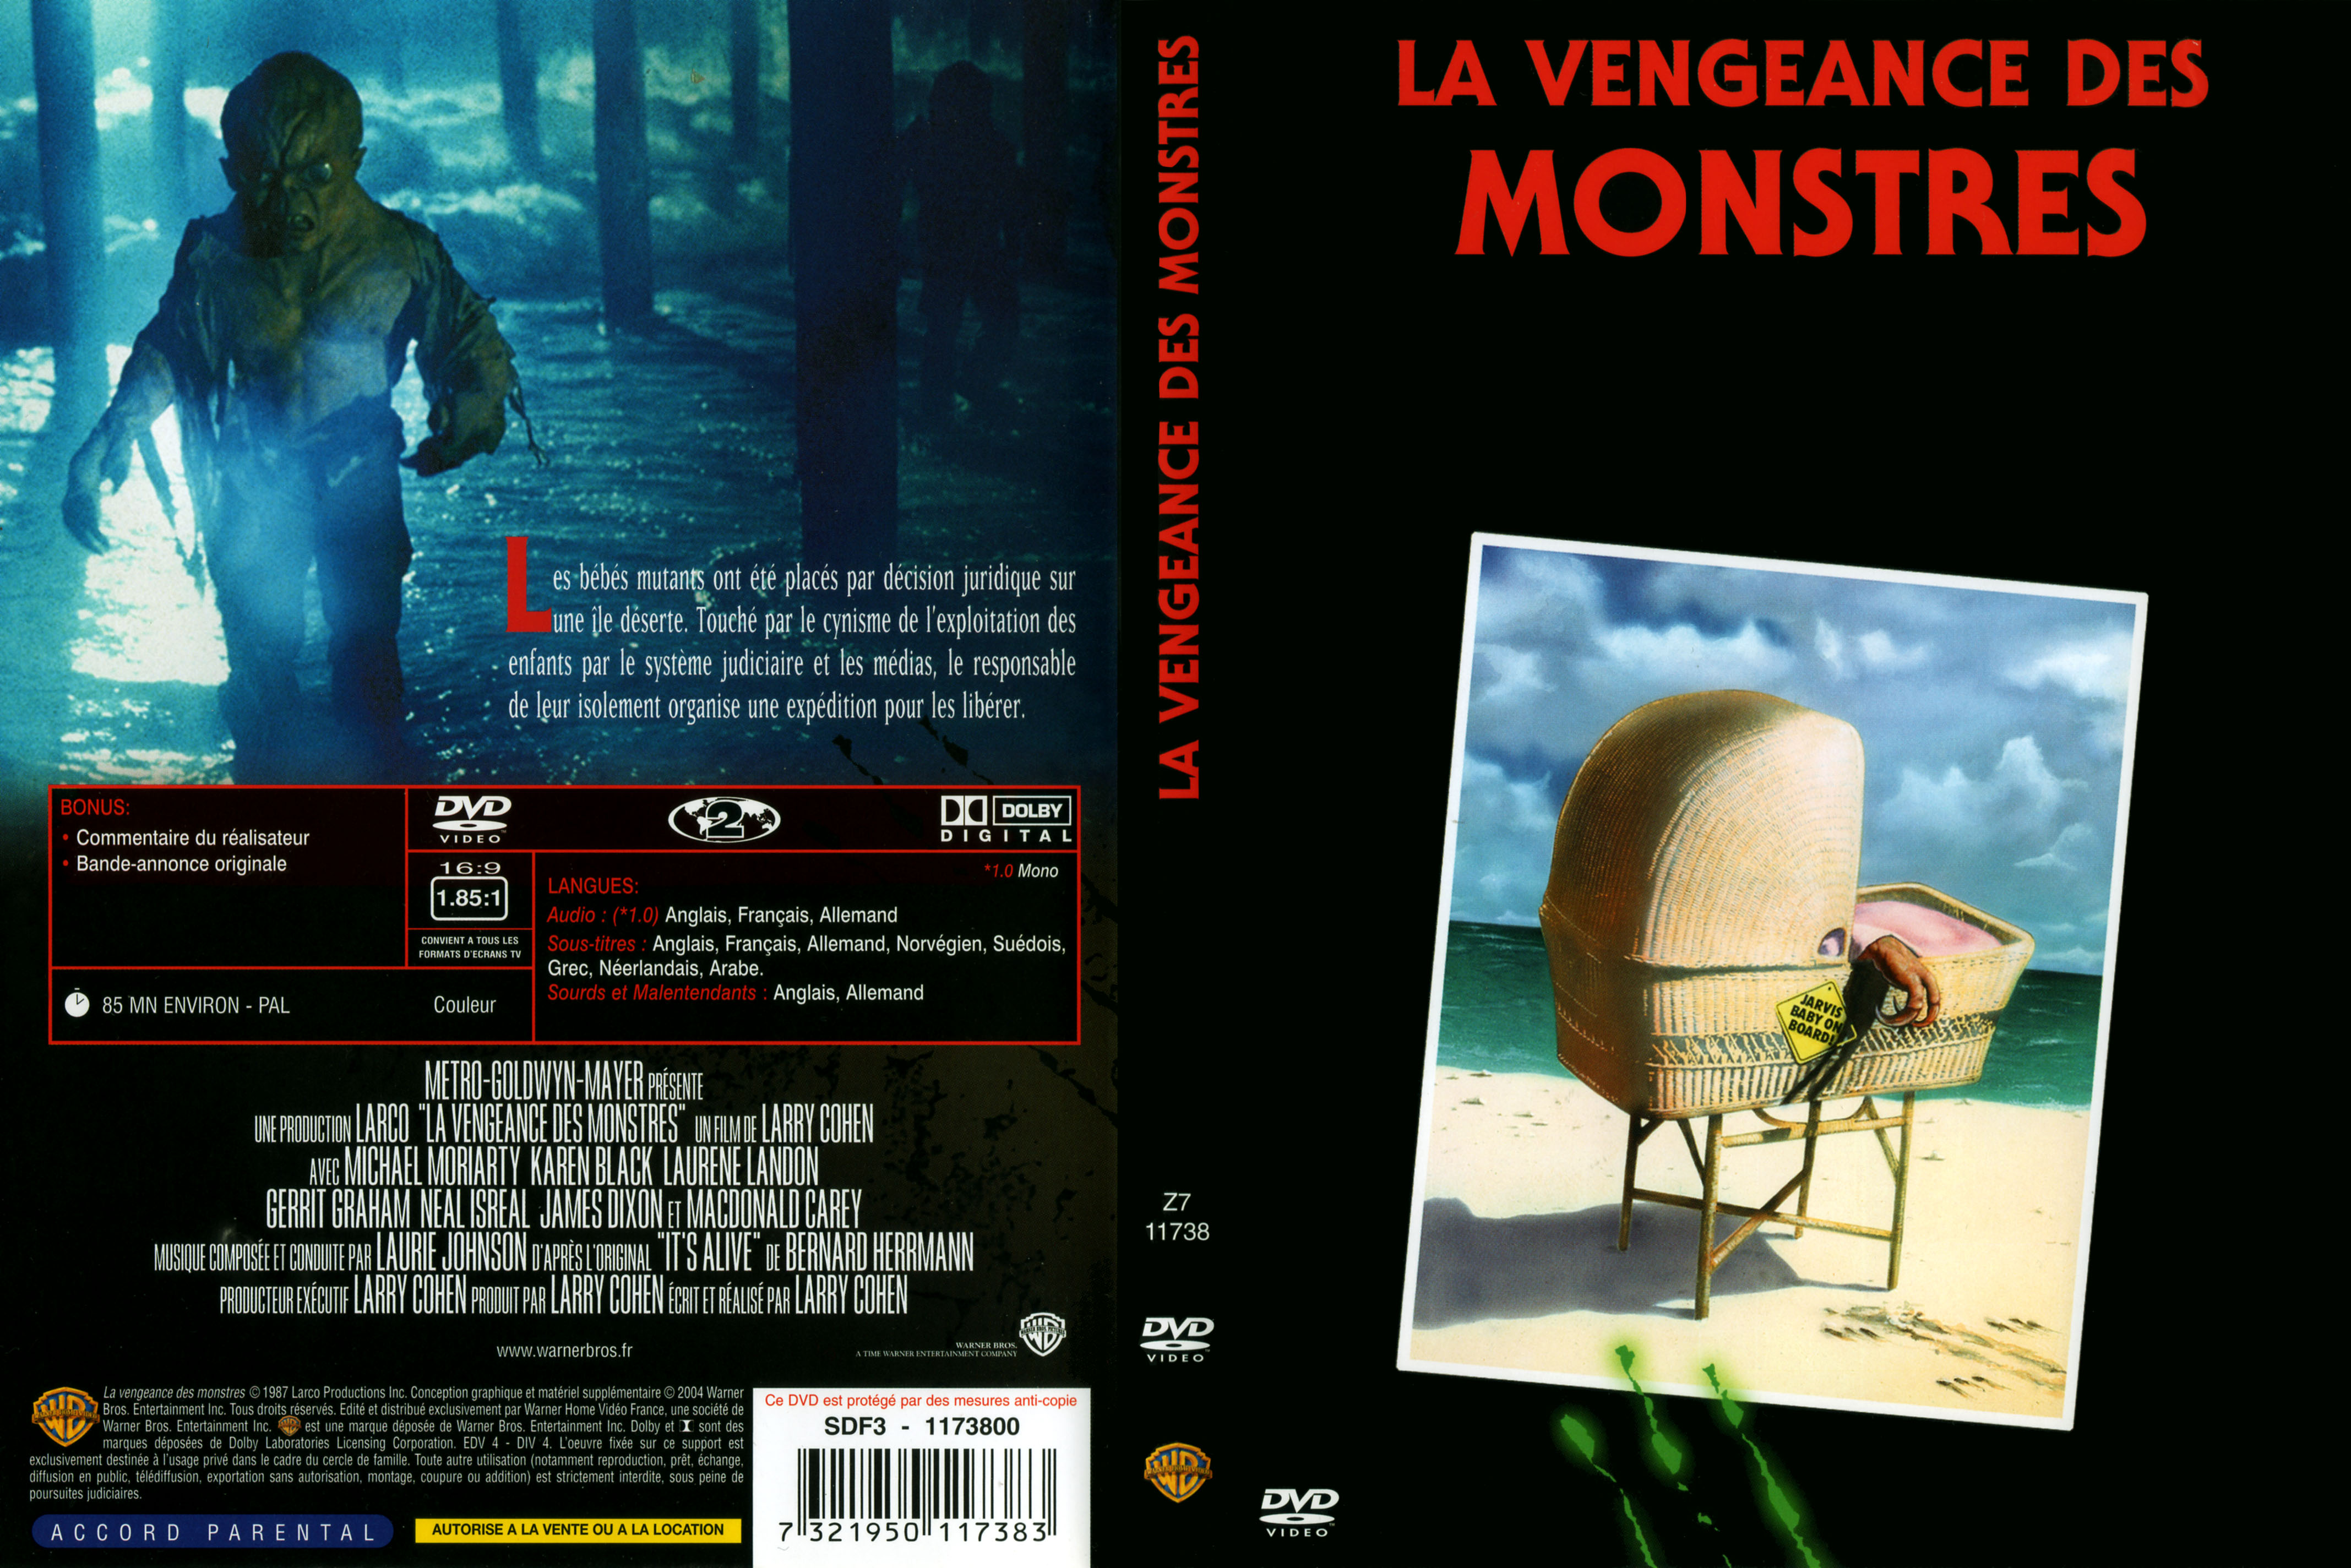 Jaquette DVD La vengeance des monstres v2